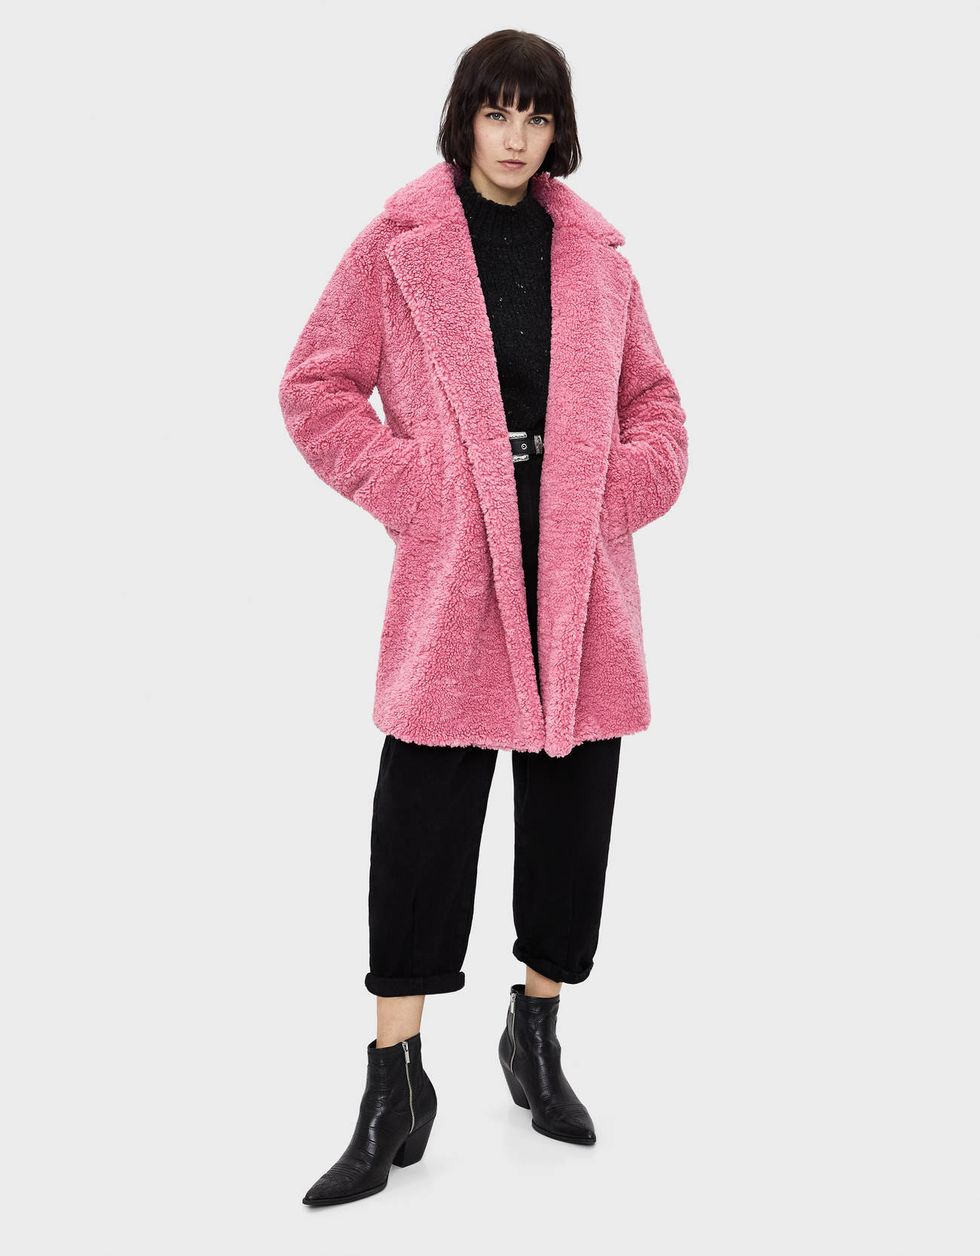 cappotti moda inverno 2020 bershka 